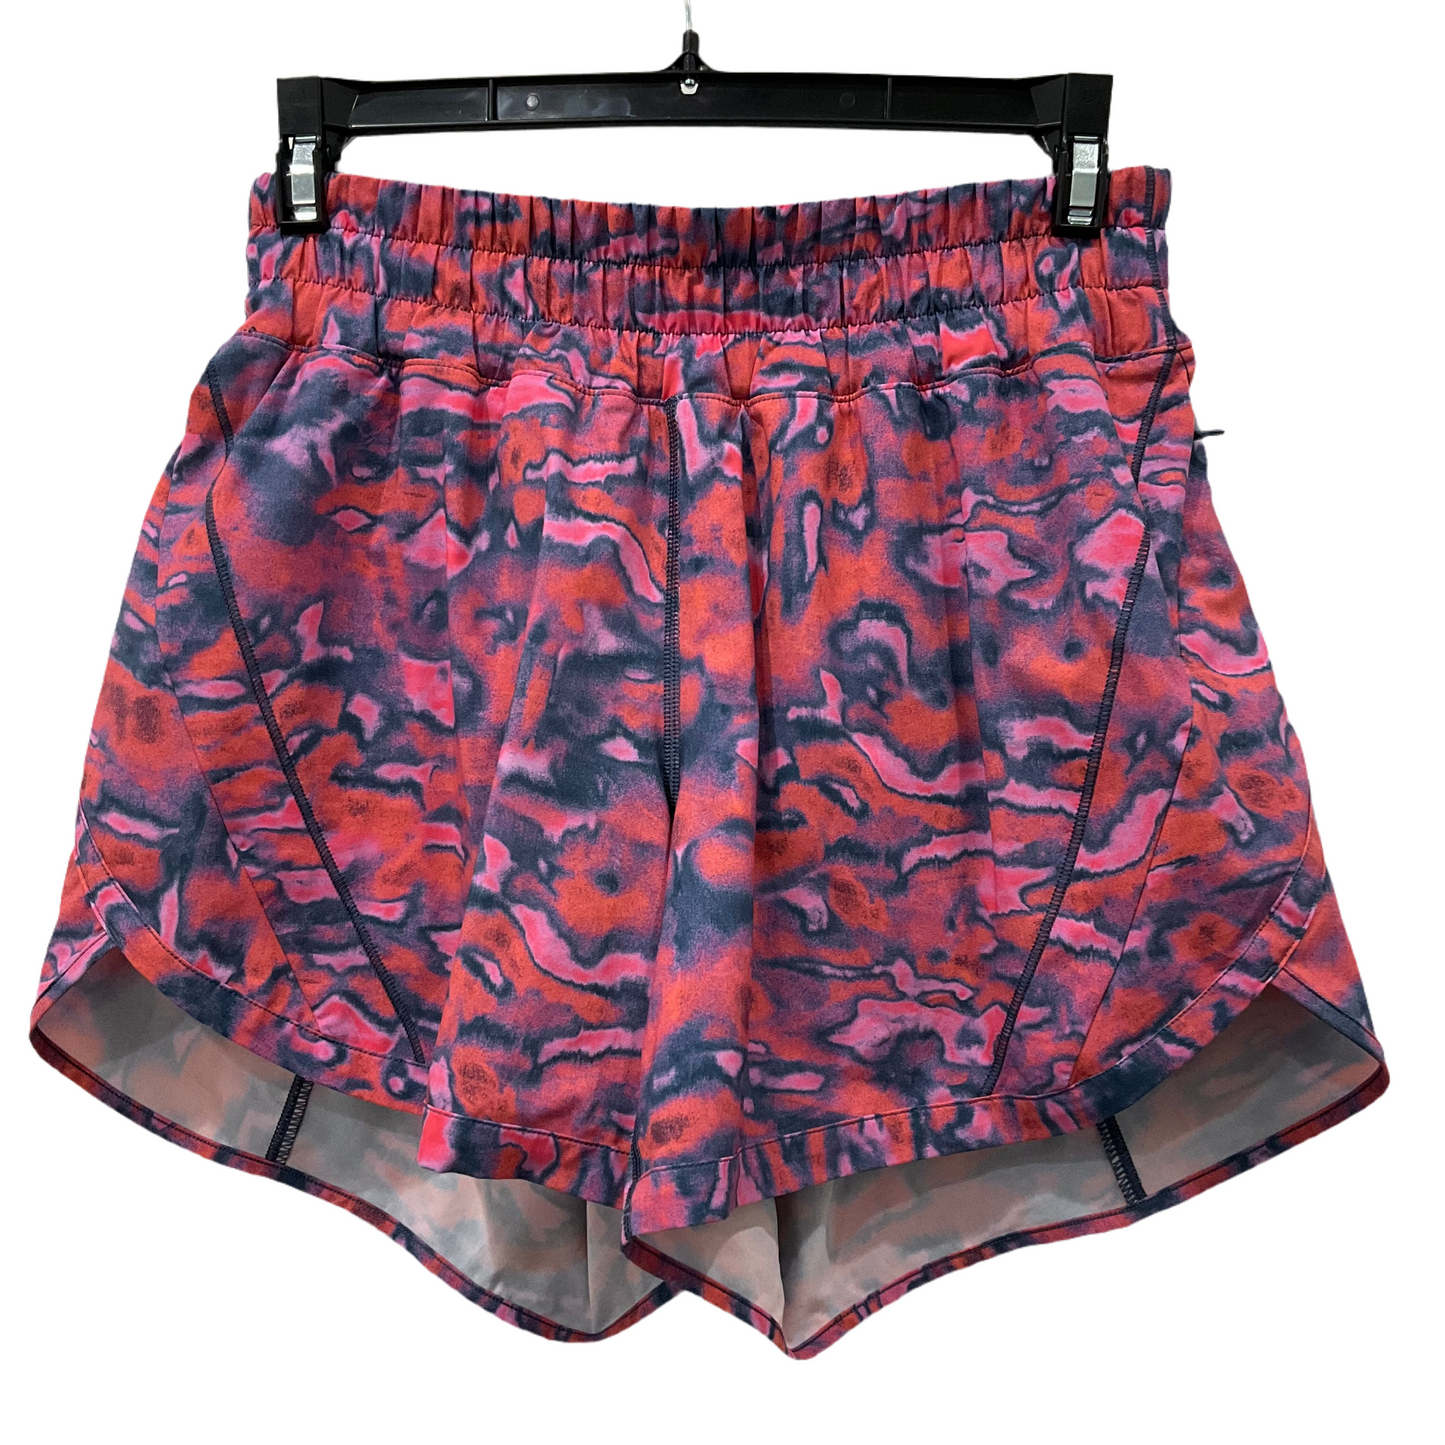 Multi-colored Athletic Shorts Lululemon, Size 6